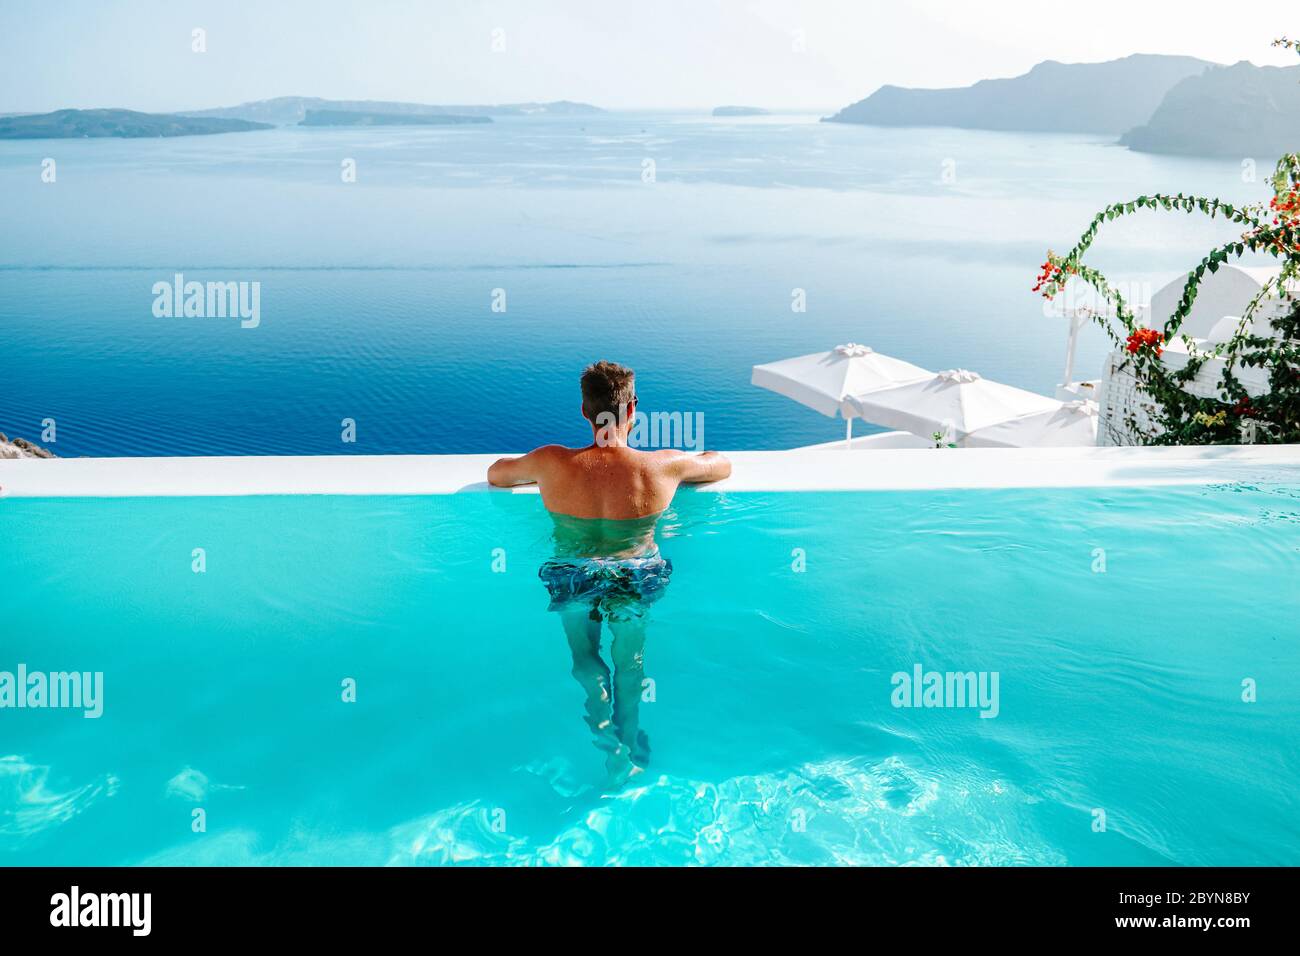 Santorini Grecia Oia, giovani uomini in nuotata breve relax in piscina con vista sulla caldera dell'isola di Santorini grecia, piscina infinity Grecia Foto Stock